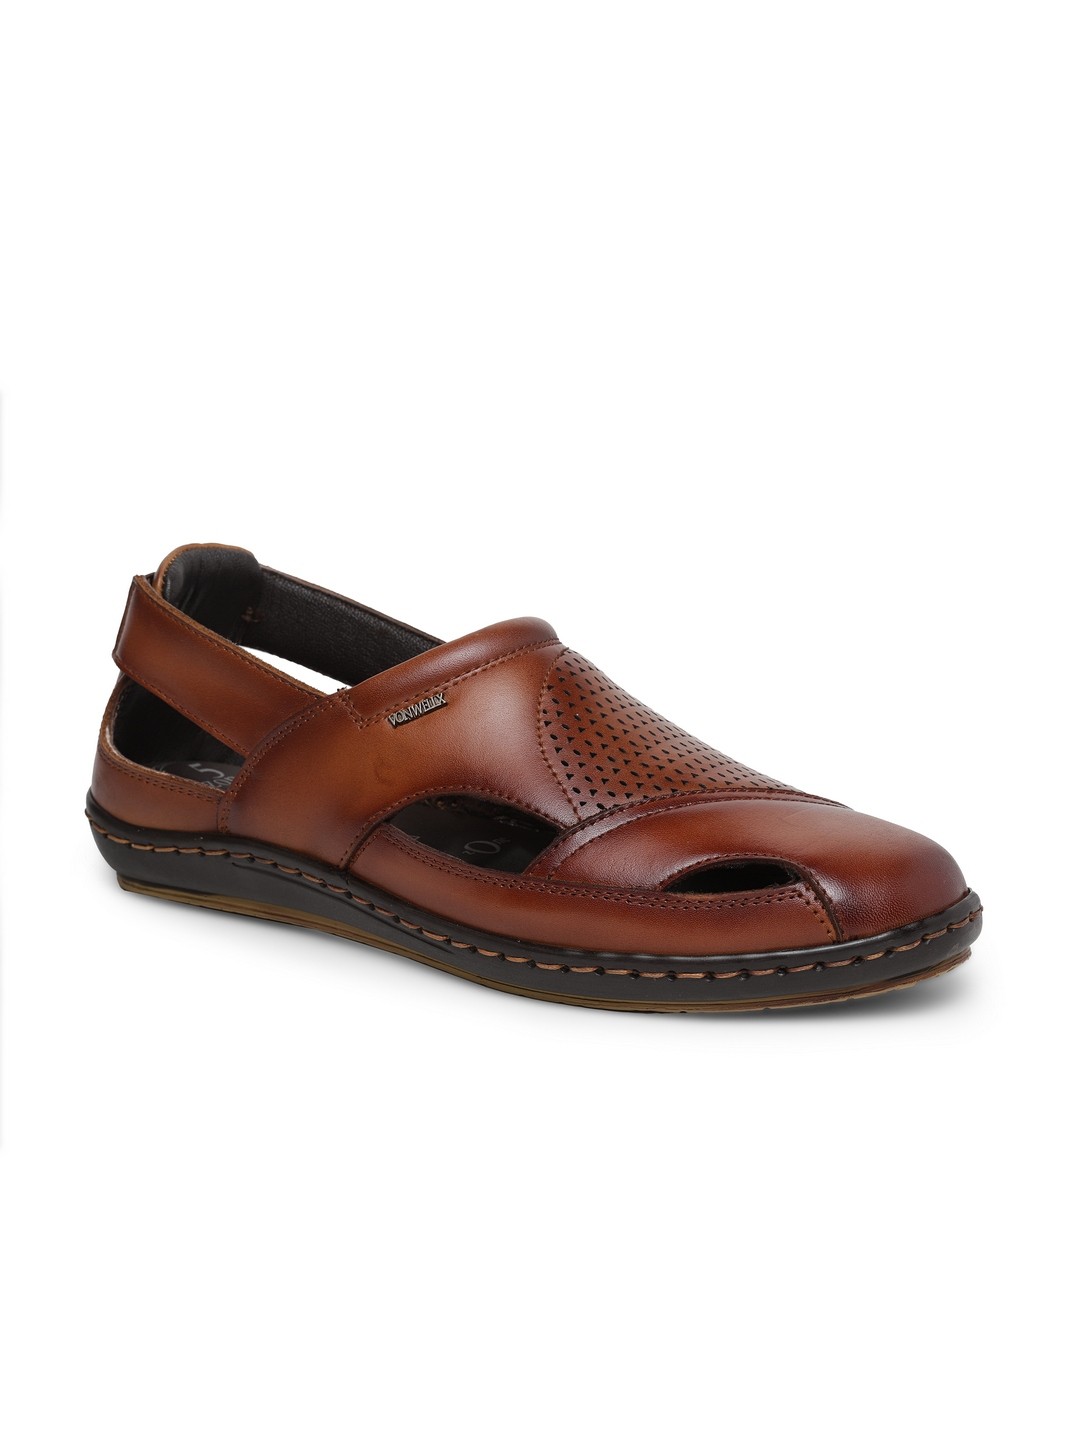 Buy Von Wellx Germany Comfort Men's Tan Sandal Eddie Online in Rajkot